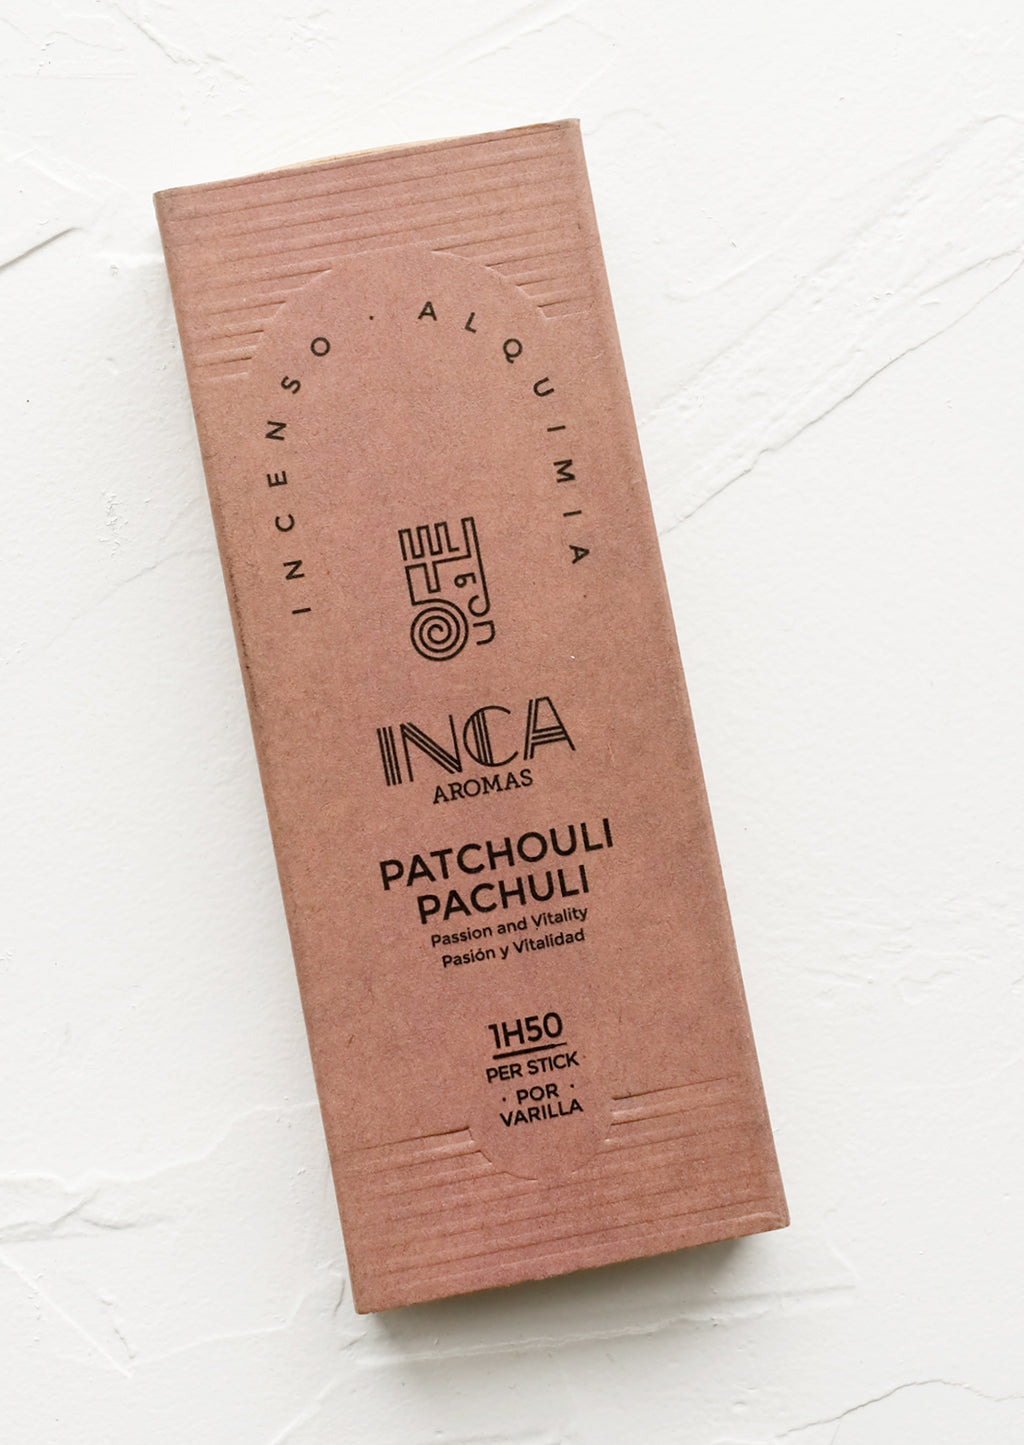 Patchouli: A box of patchouli stick incense.